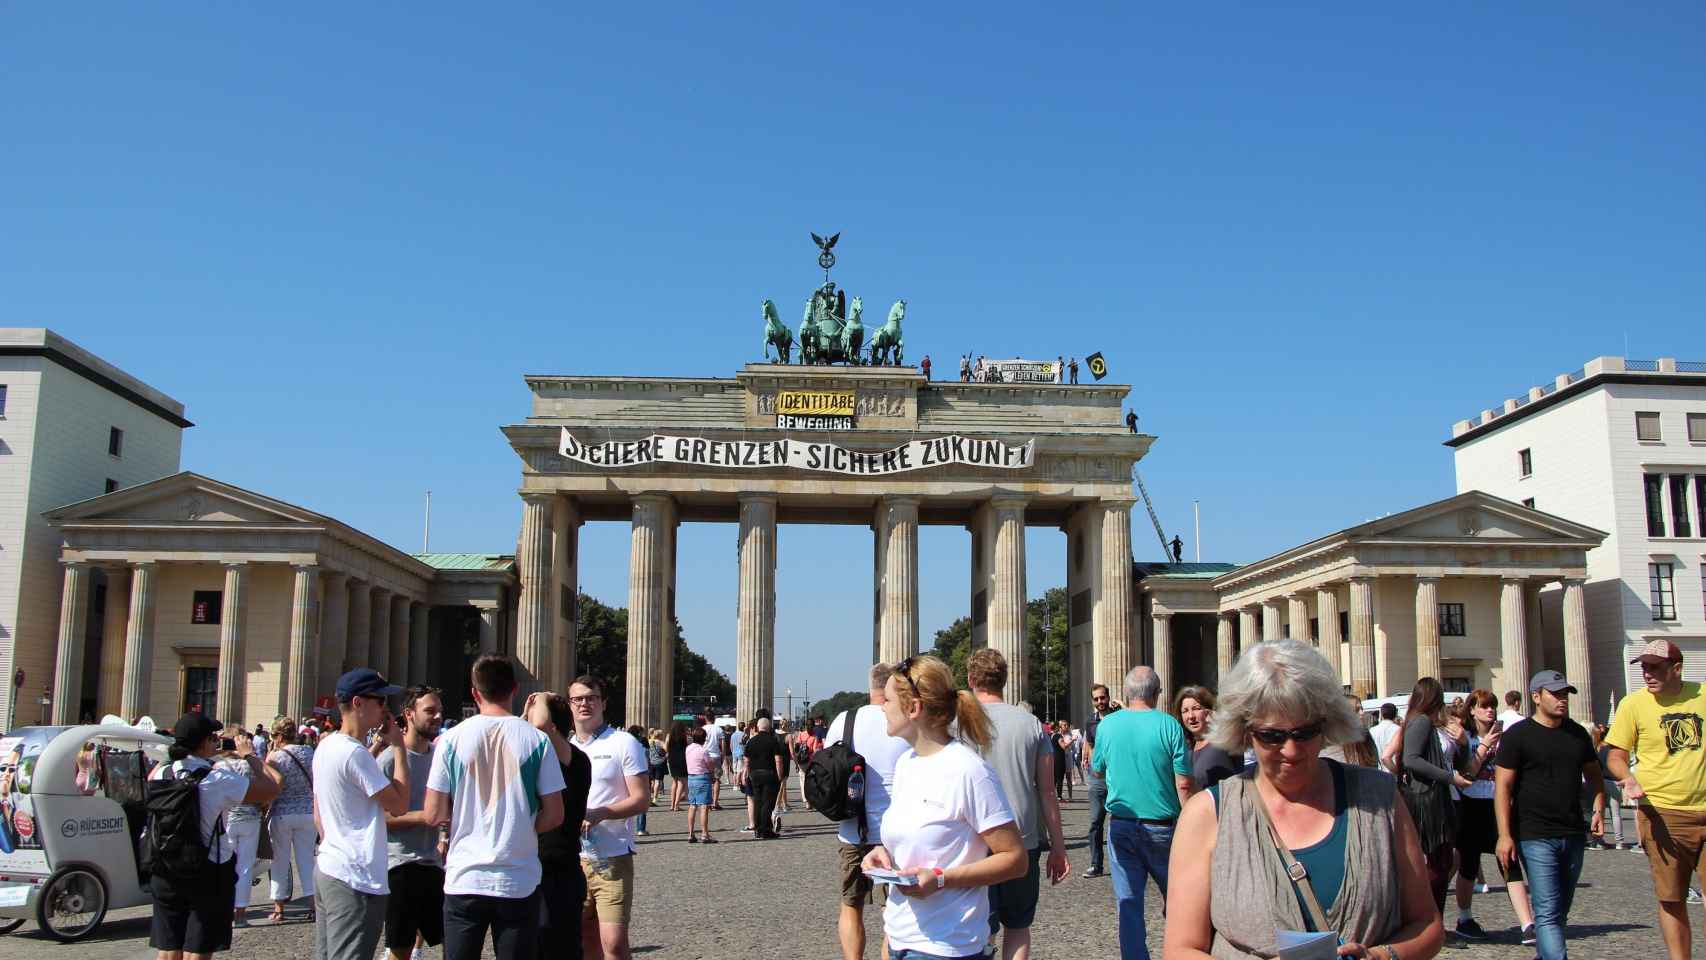 Pancarta del movimiento ultra en la Puerta de Brandenburgo en Berlín